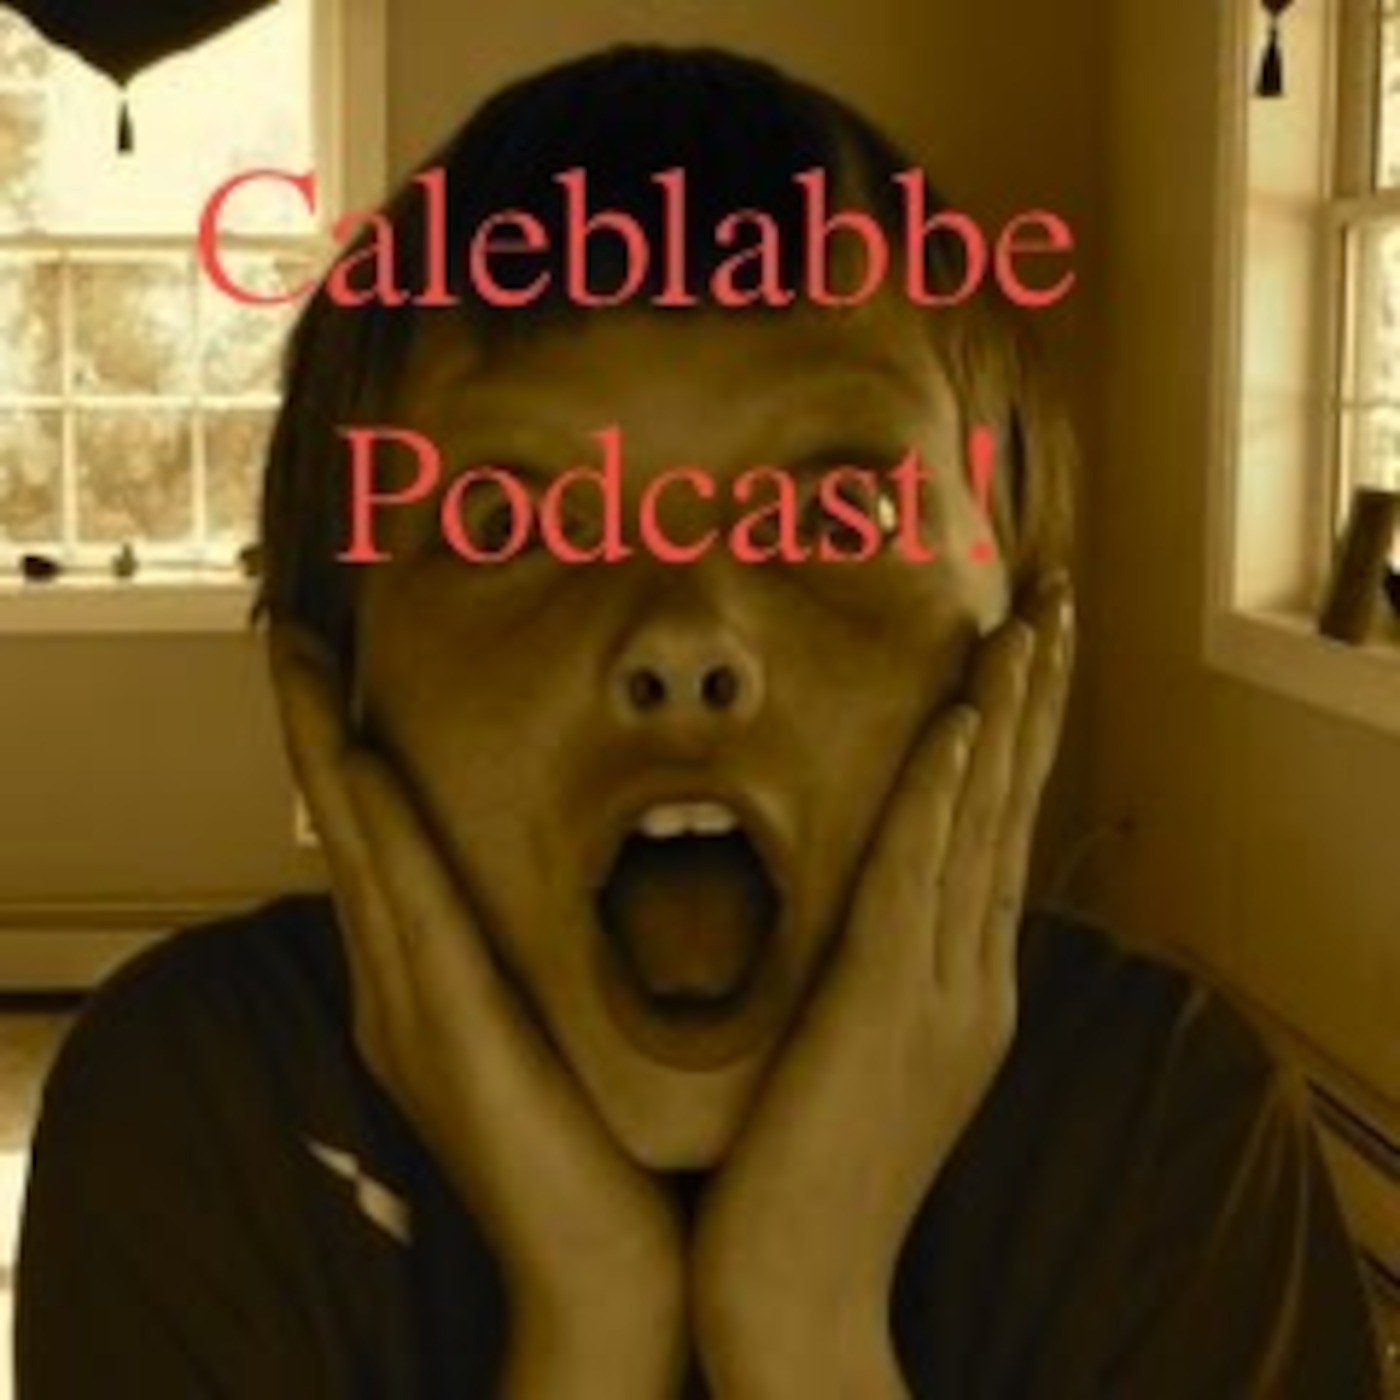 Caleb Labbe's Podcast